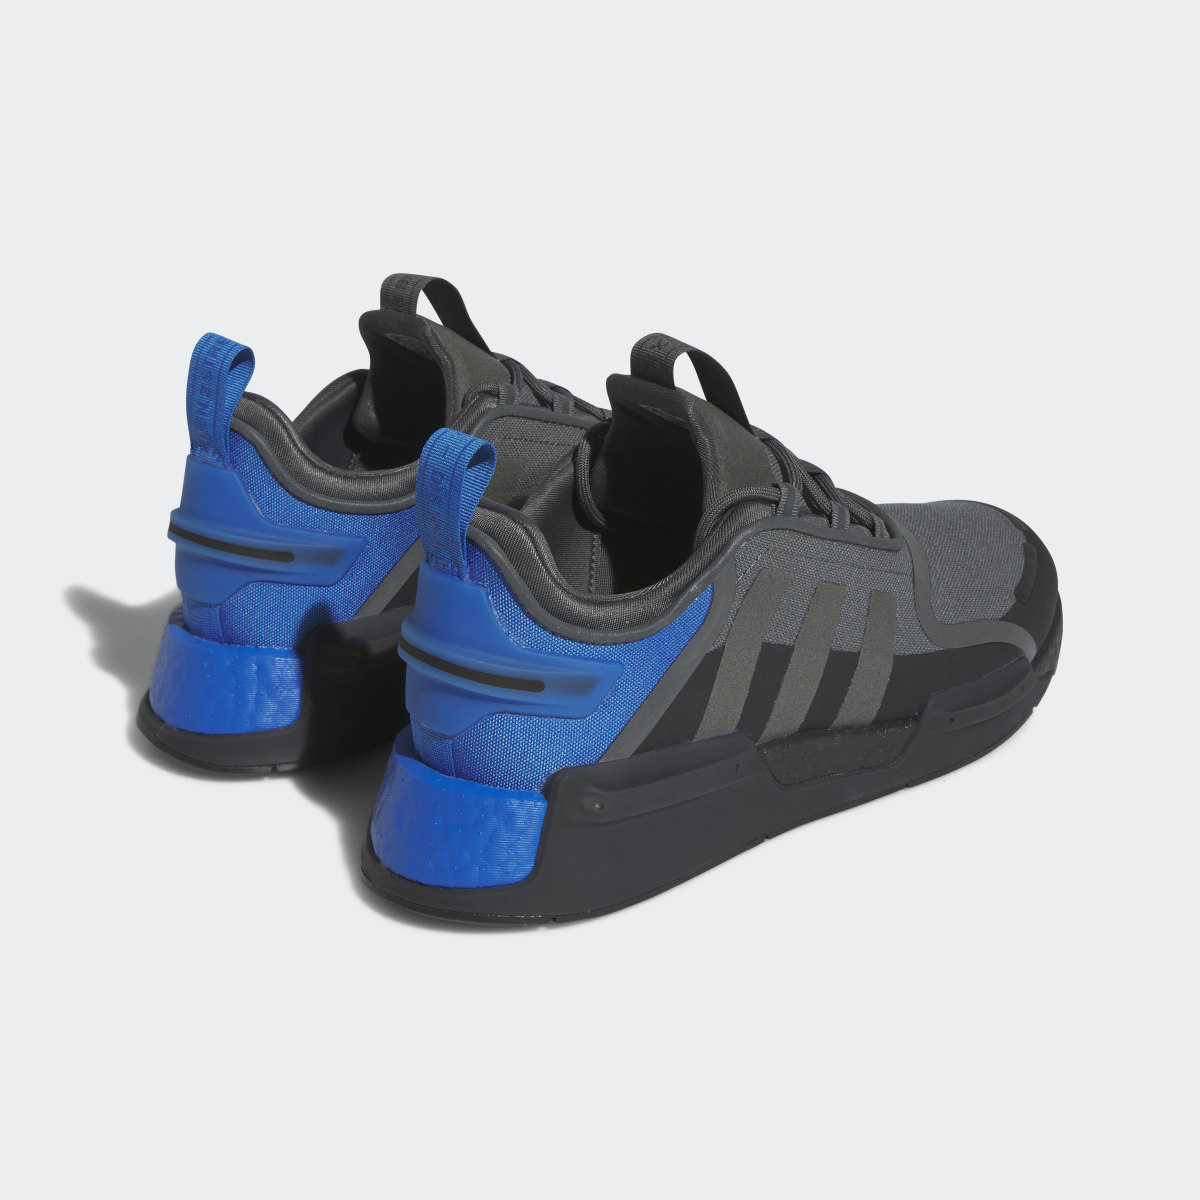 Adidas NMD_R1 V3 Shoes. 8